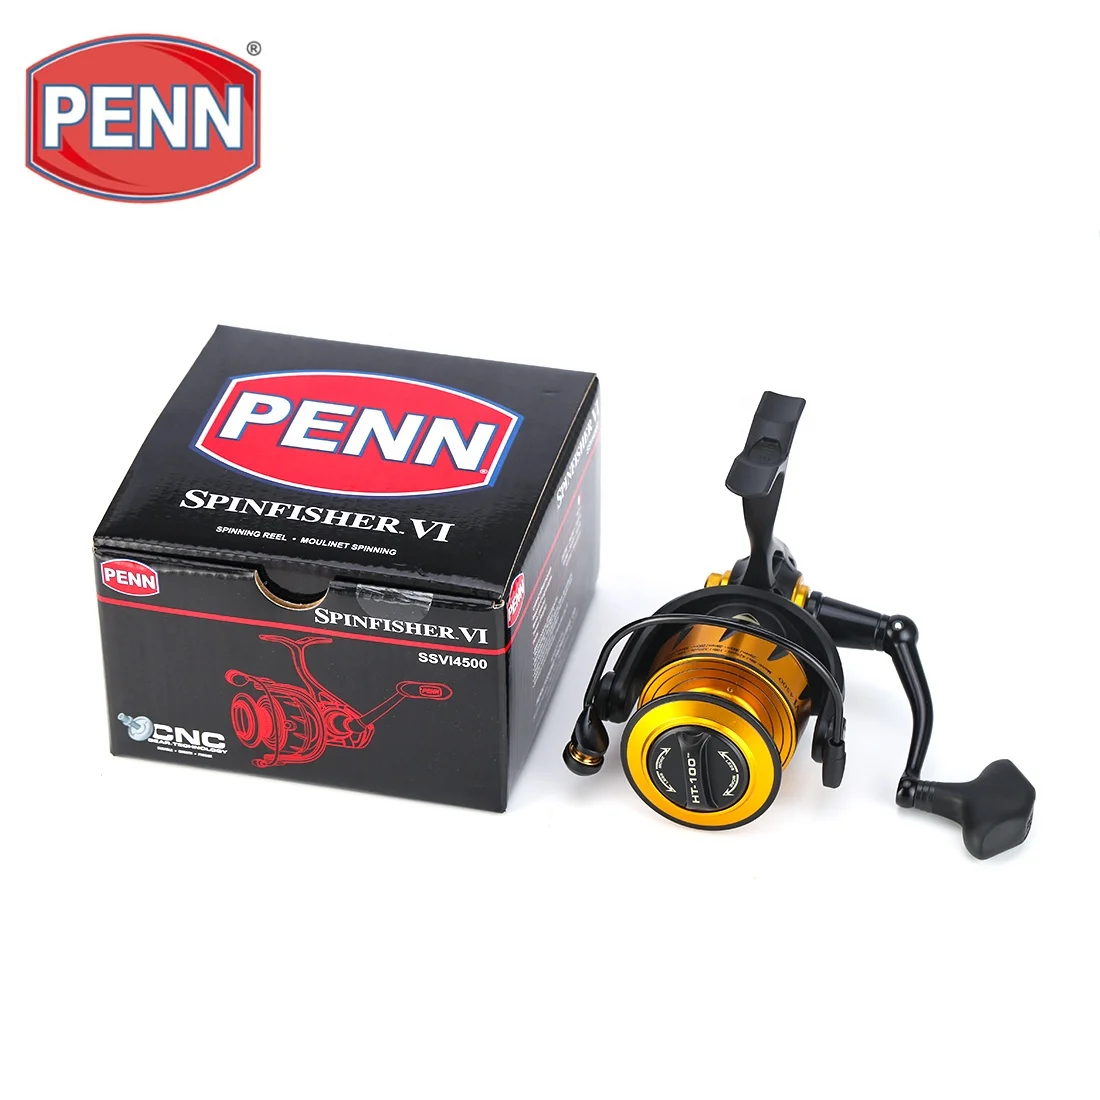 Penn Spinfisher IV SSVI 10500 Reel